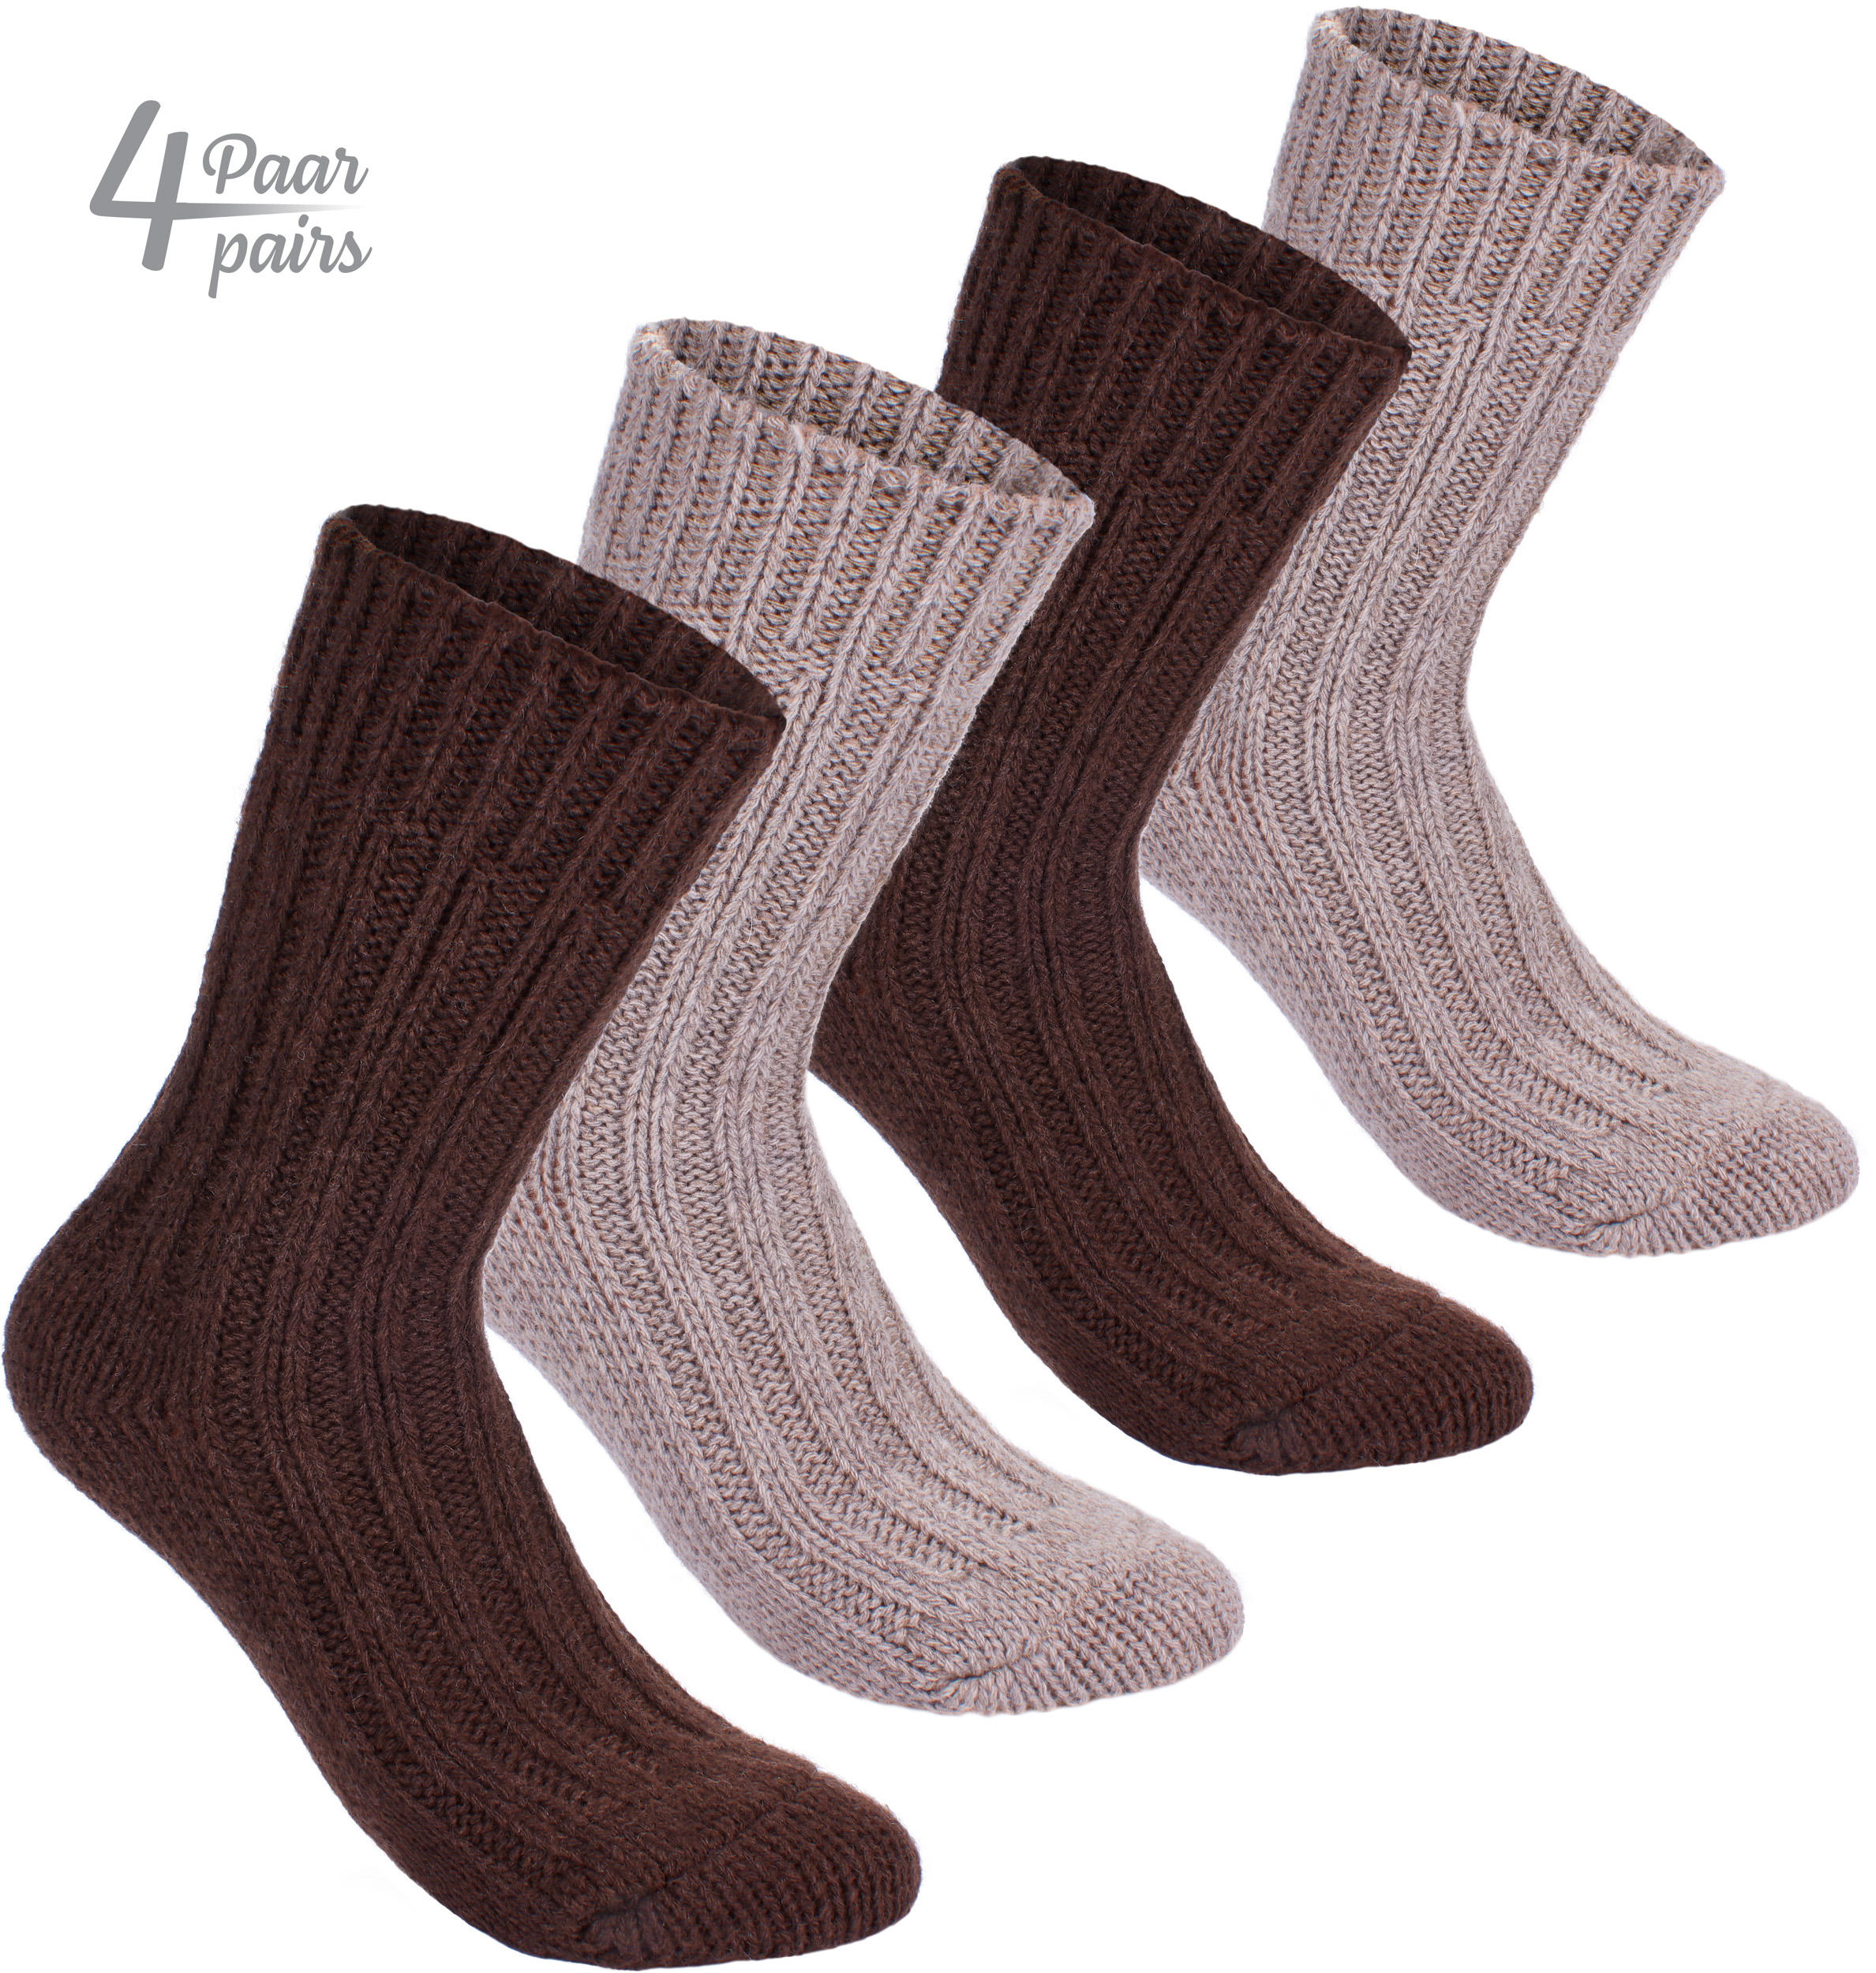 Brubaker 4 Paar Socken aus Alpakawolle – Braun